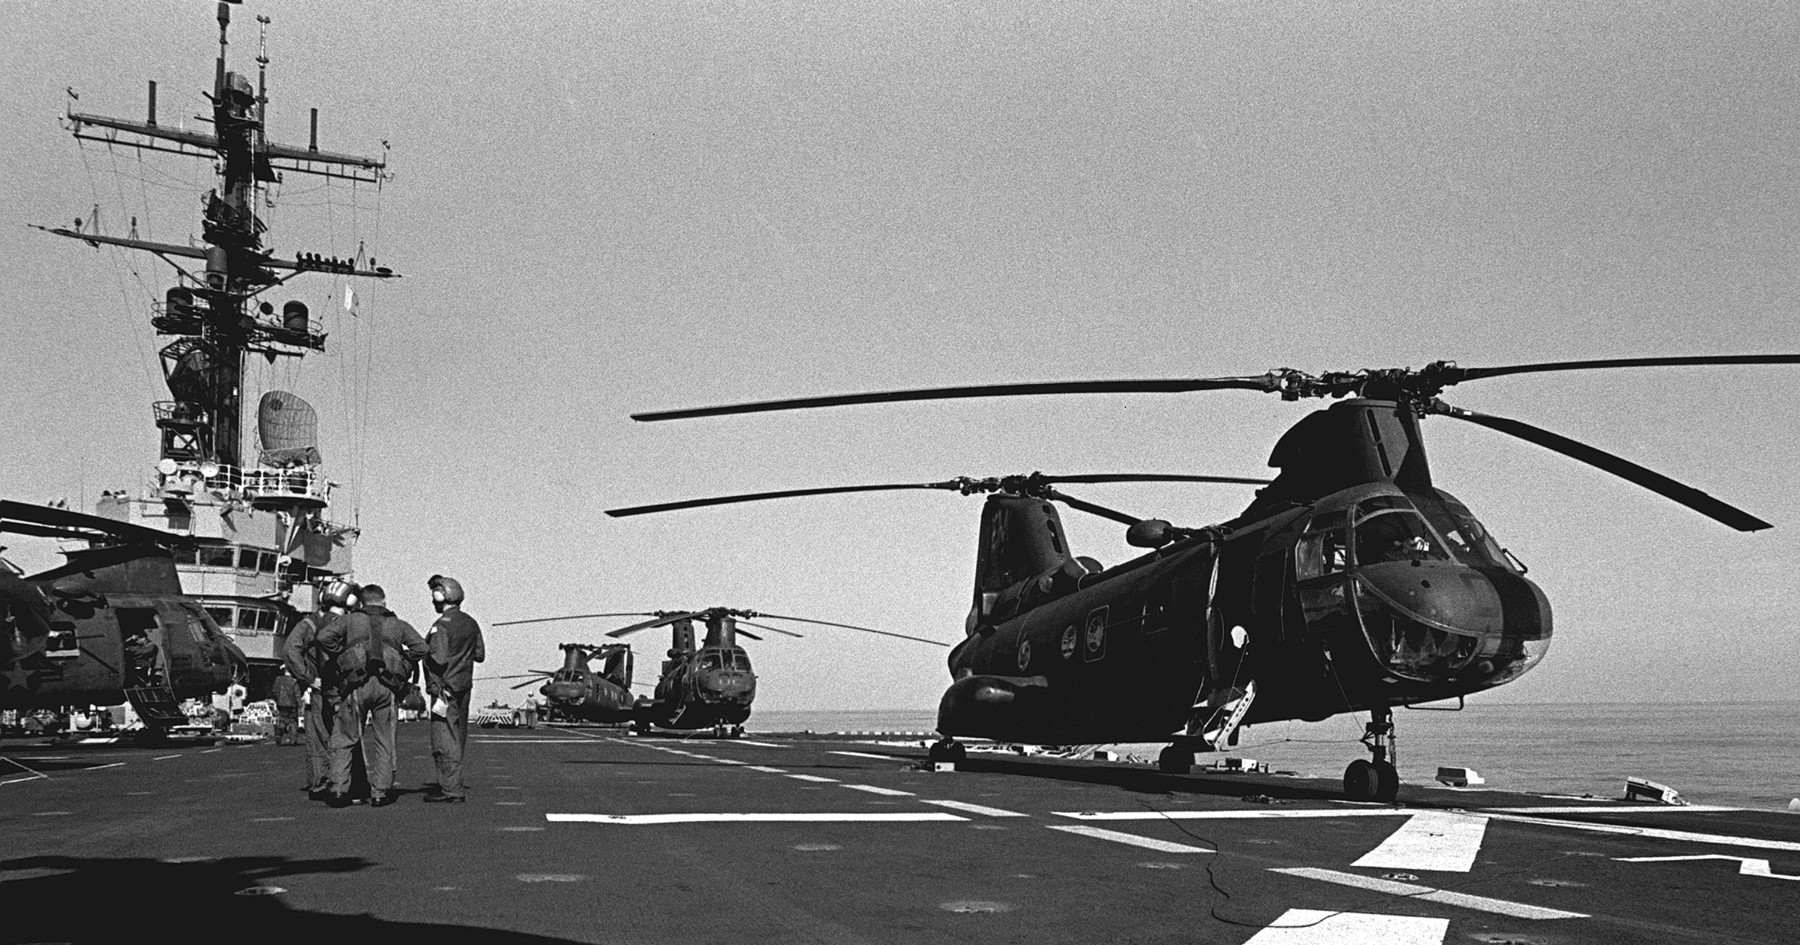 lph-9 uss guam iwo jima class amphibious assault ship landing platform helicopter us navy 18